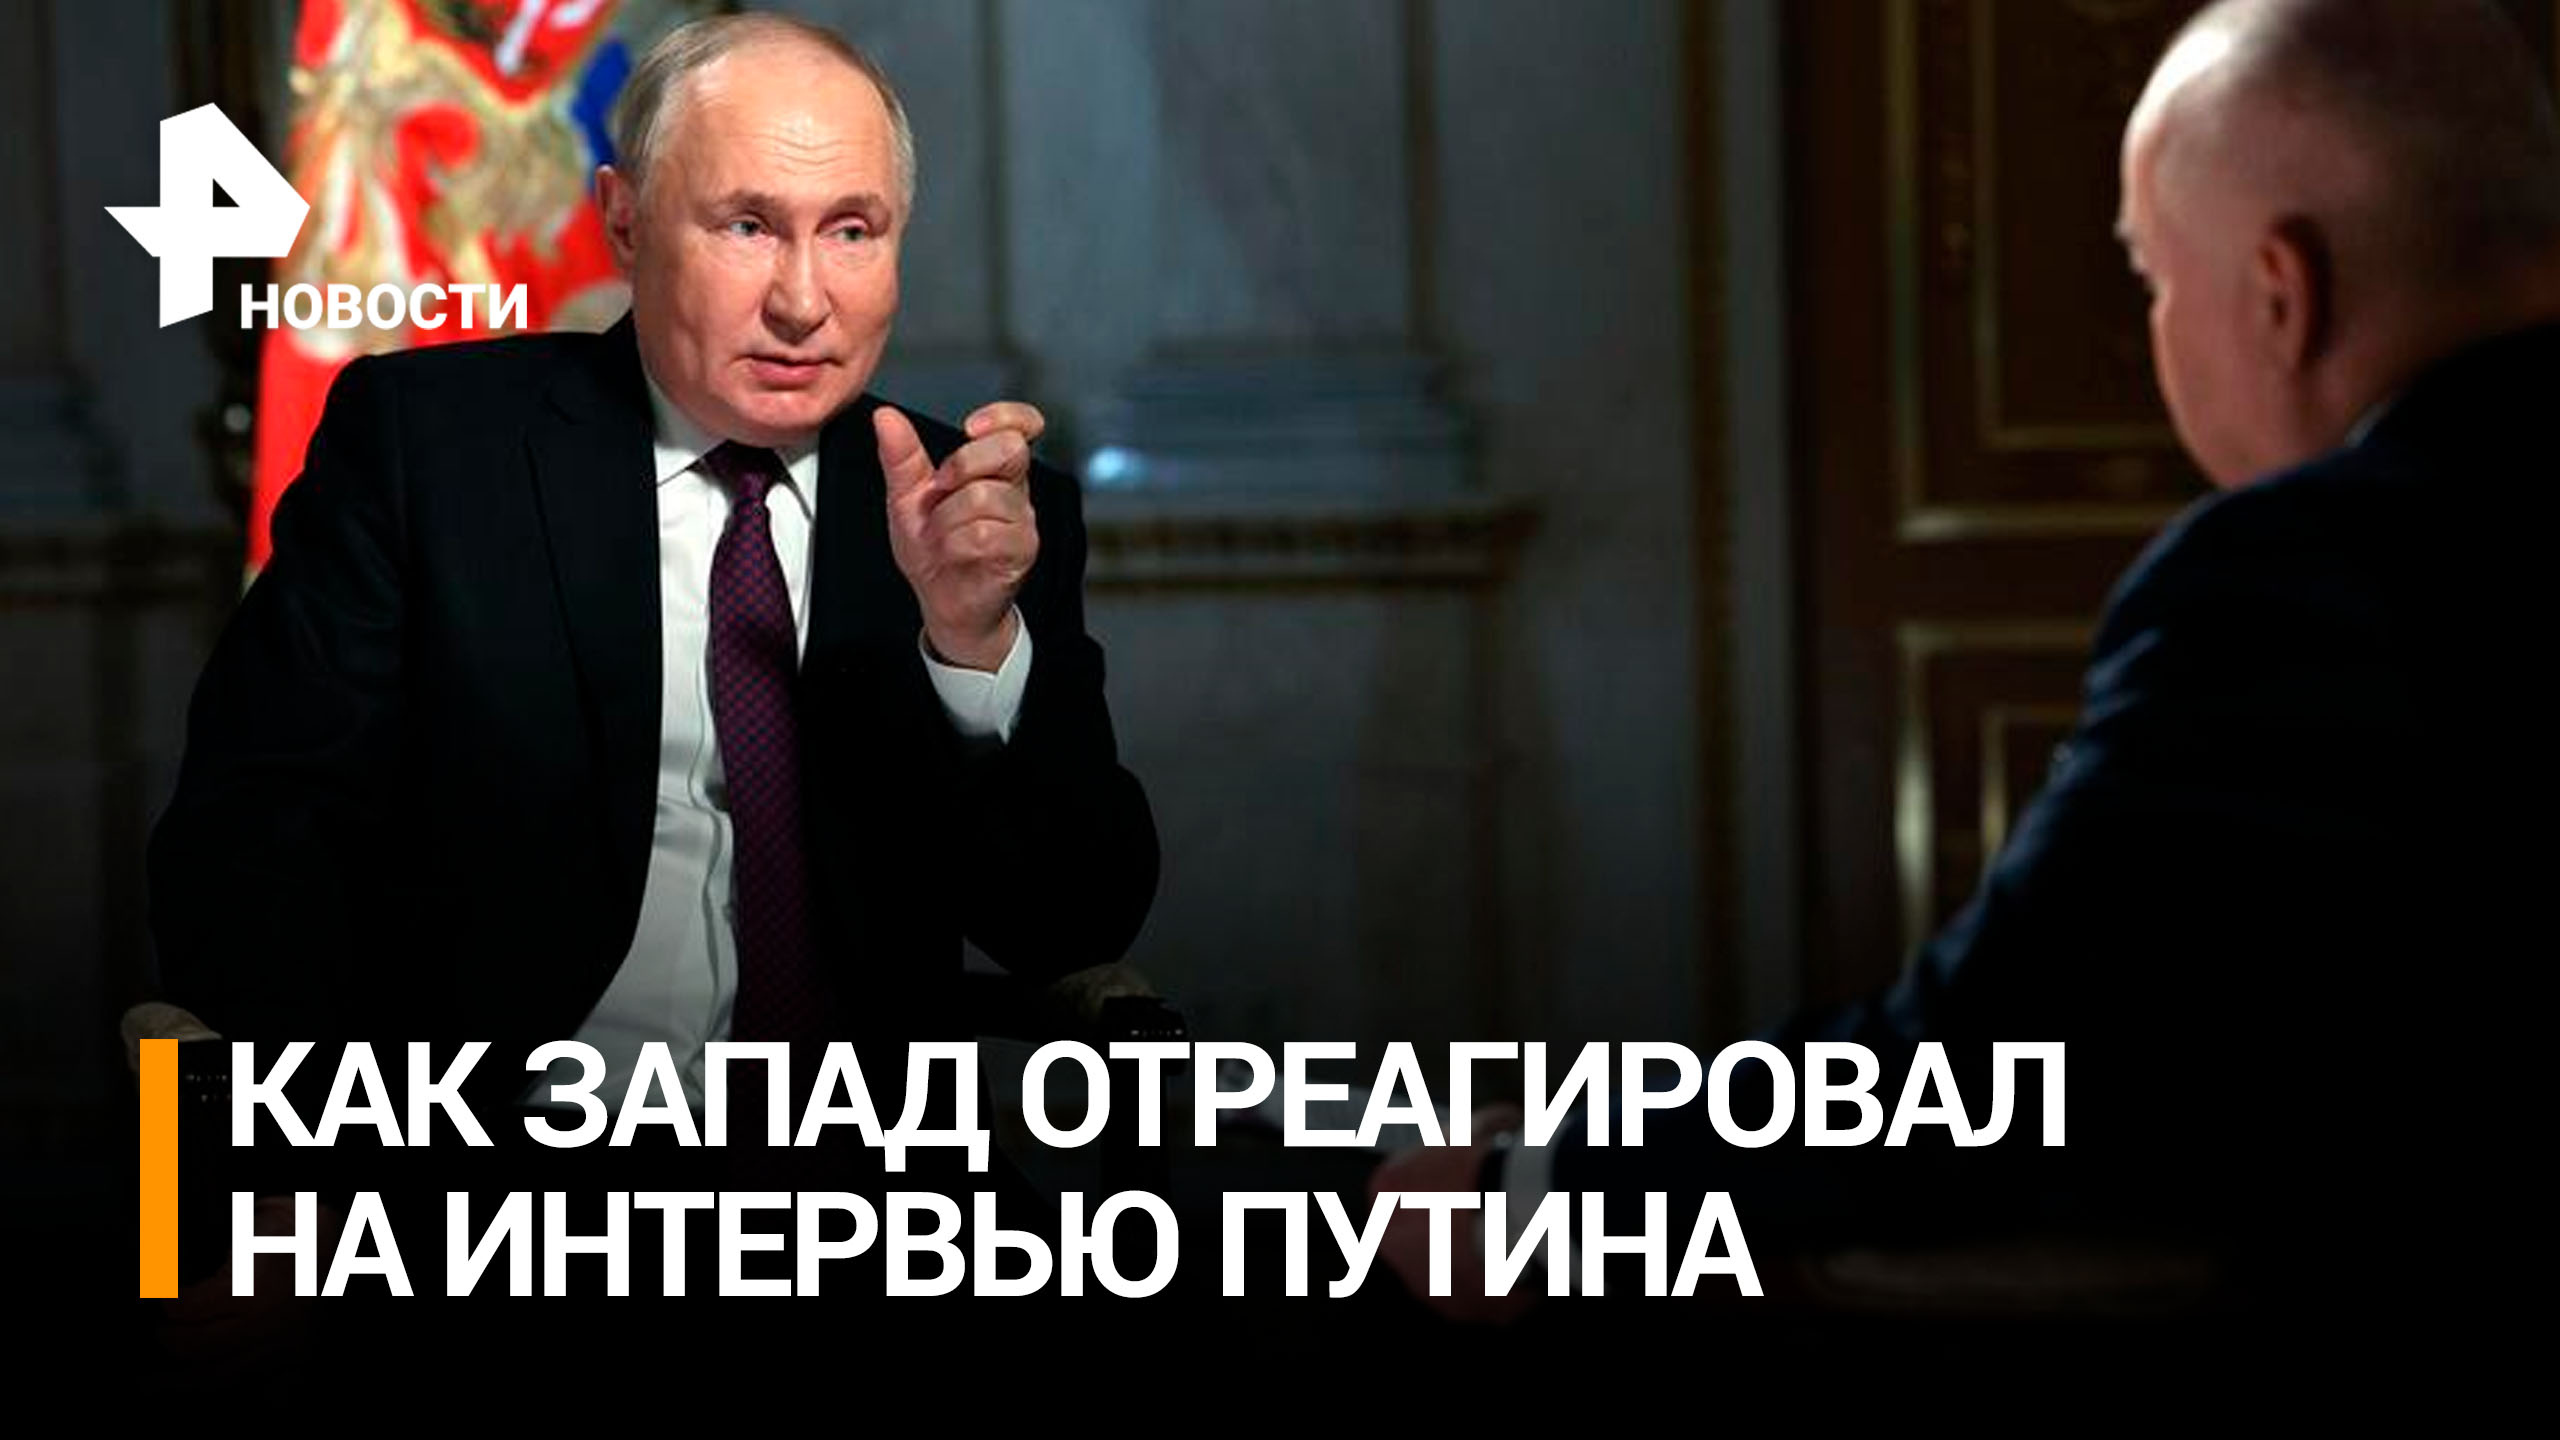 Испугались ядерного оружия: как на Западе восприняли интервью Путина / РЕН Новости